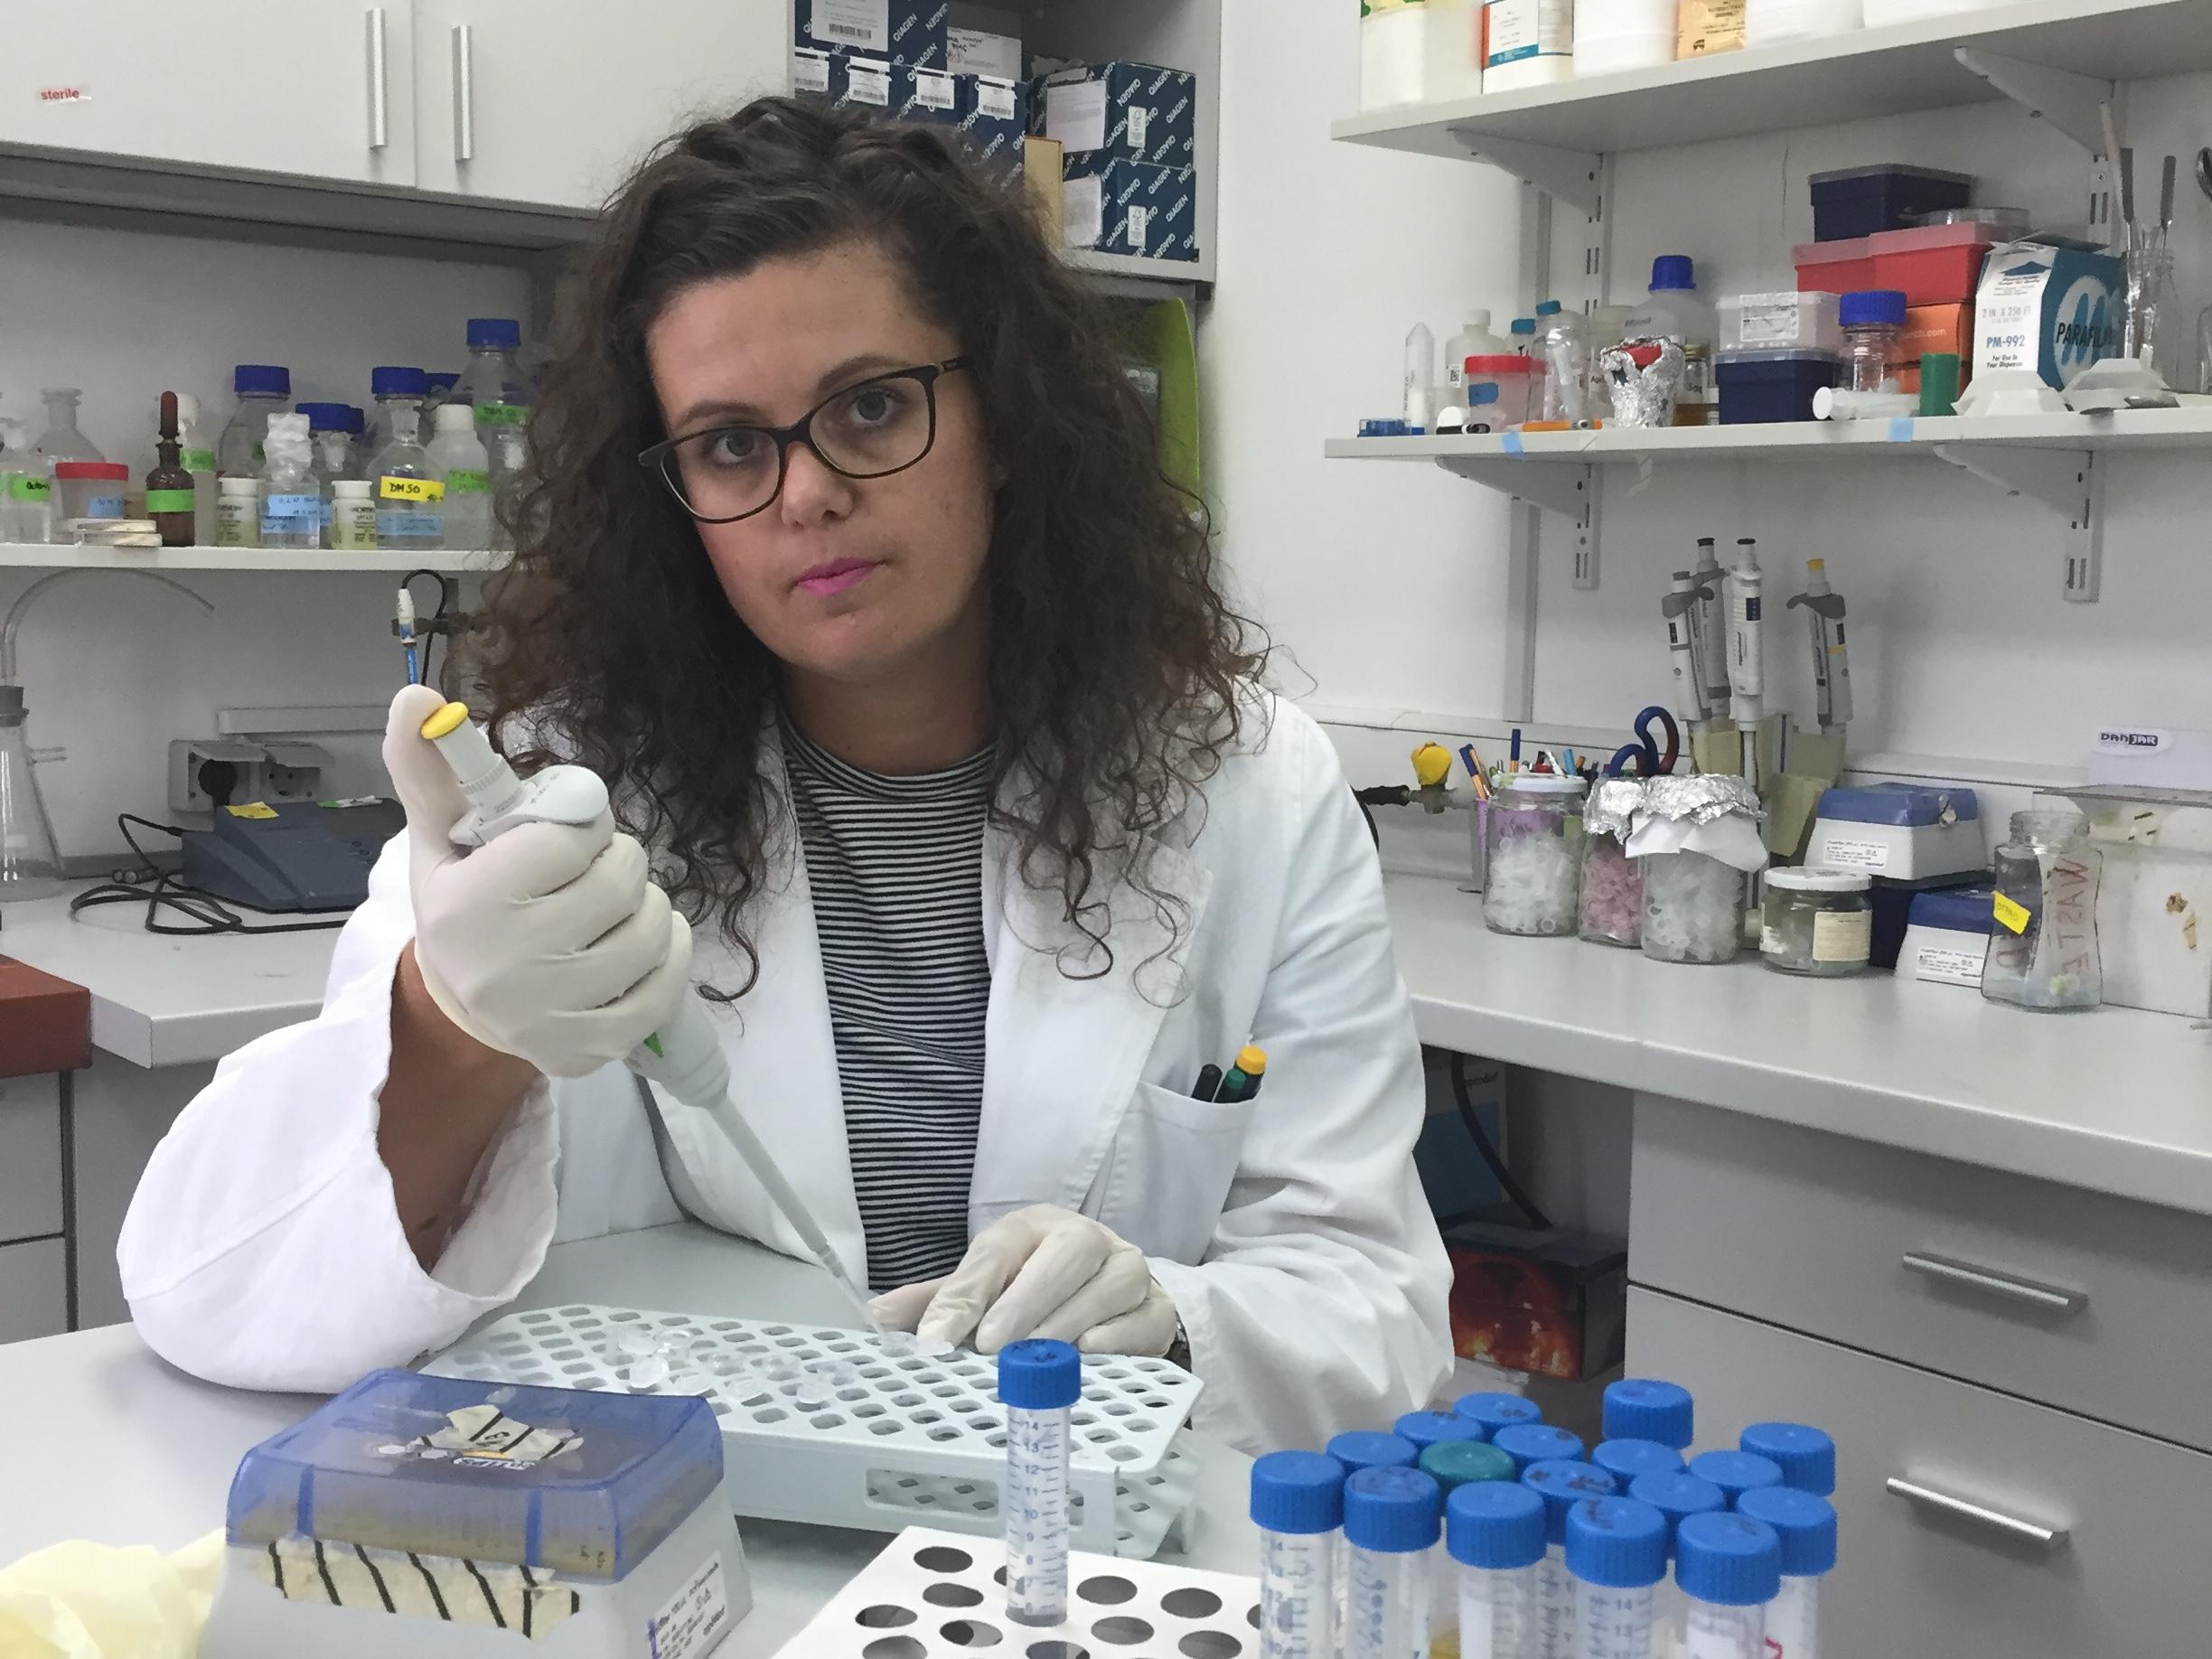 Ruđerovoj znanstvenici vrijedna donacija za inovativna istraživanja antibiotičke rezistencije u okolišu